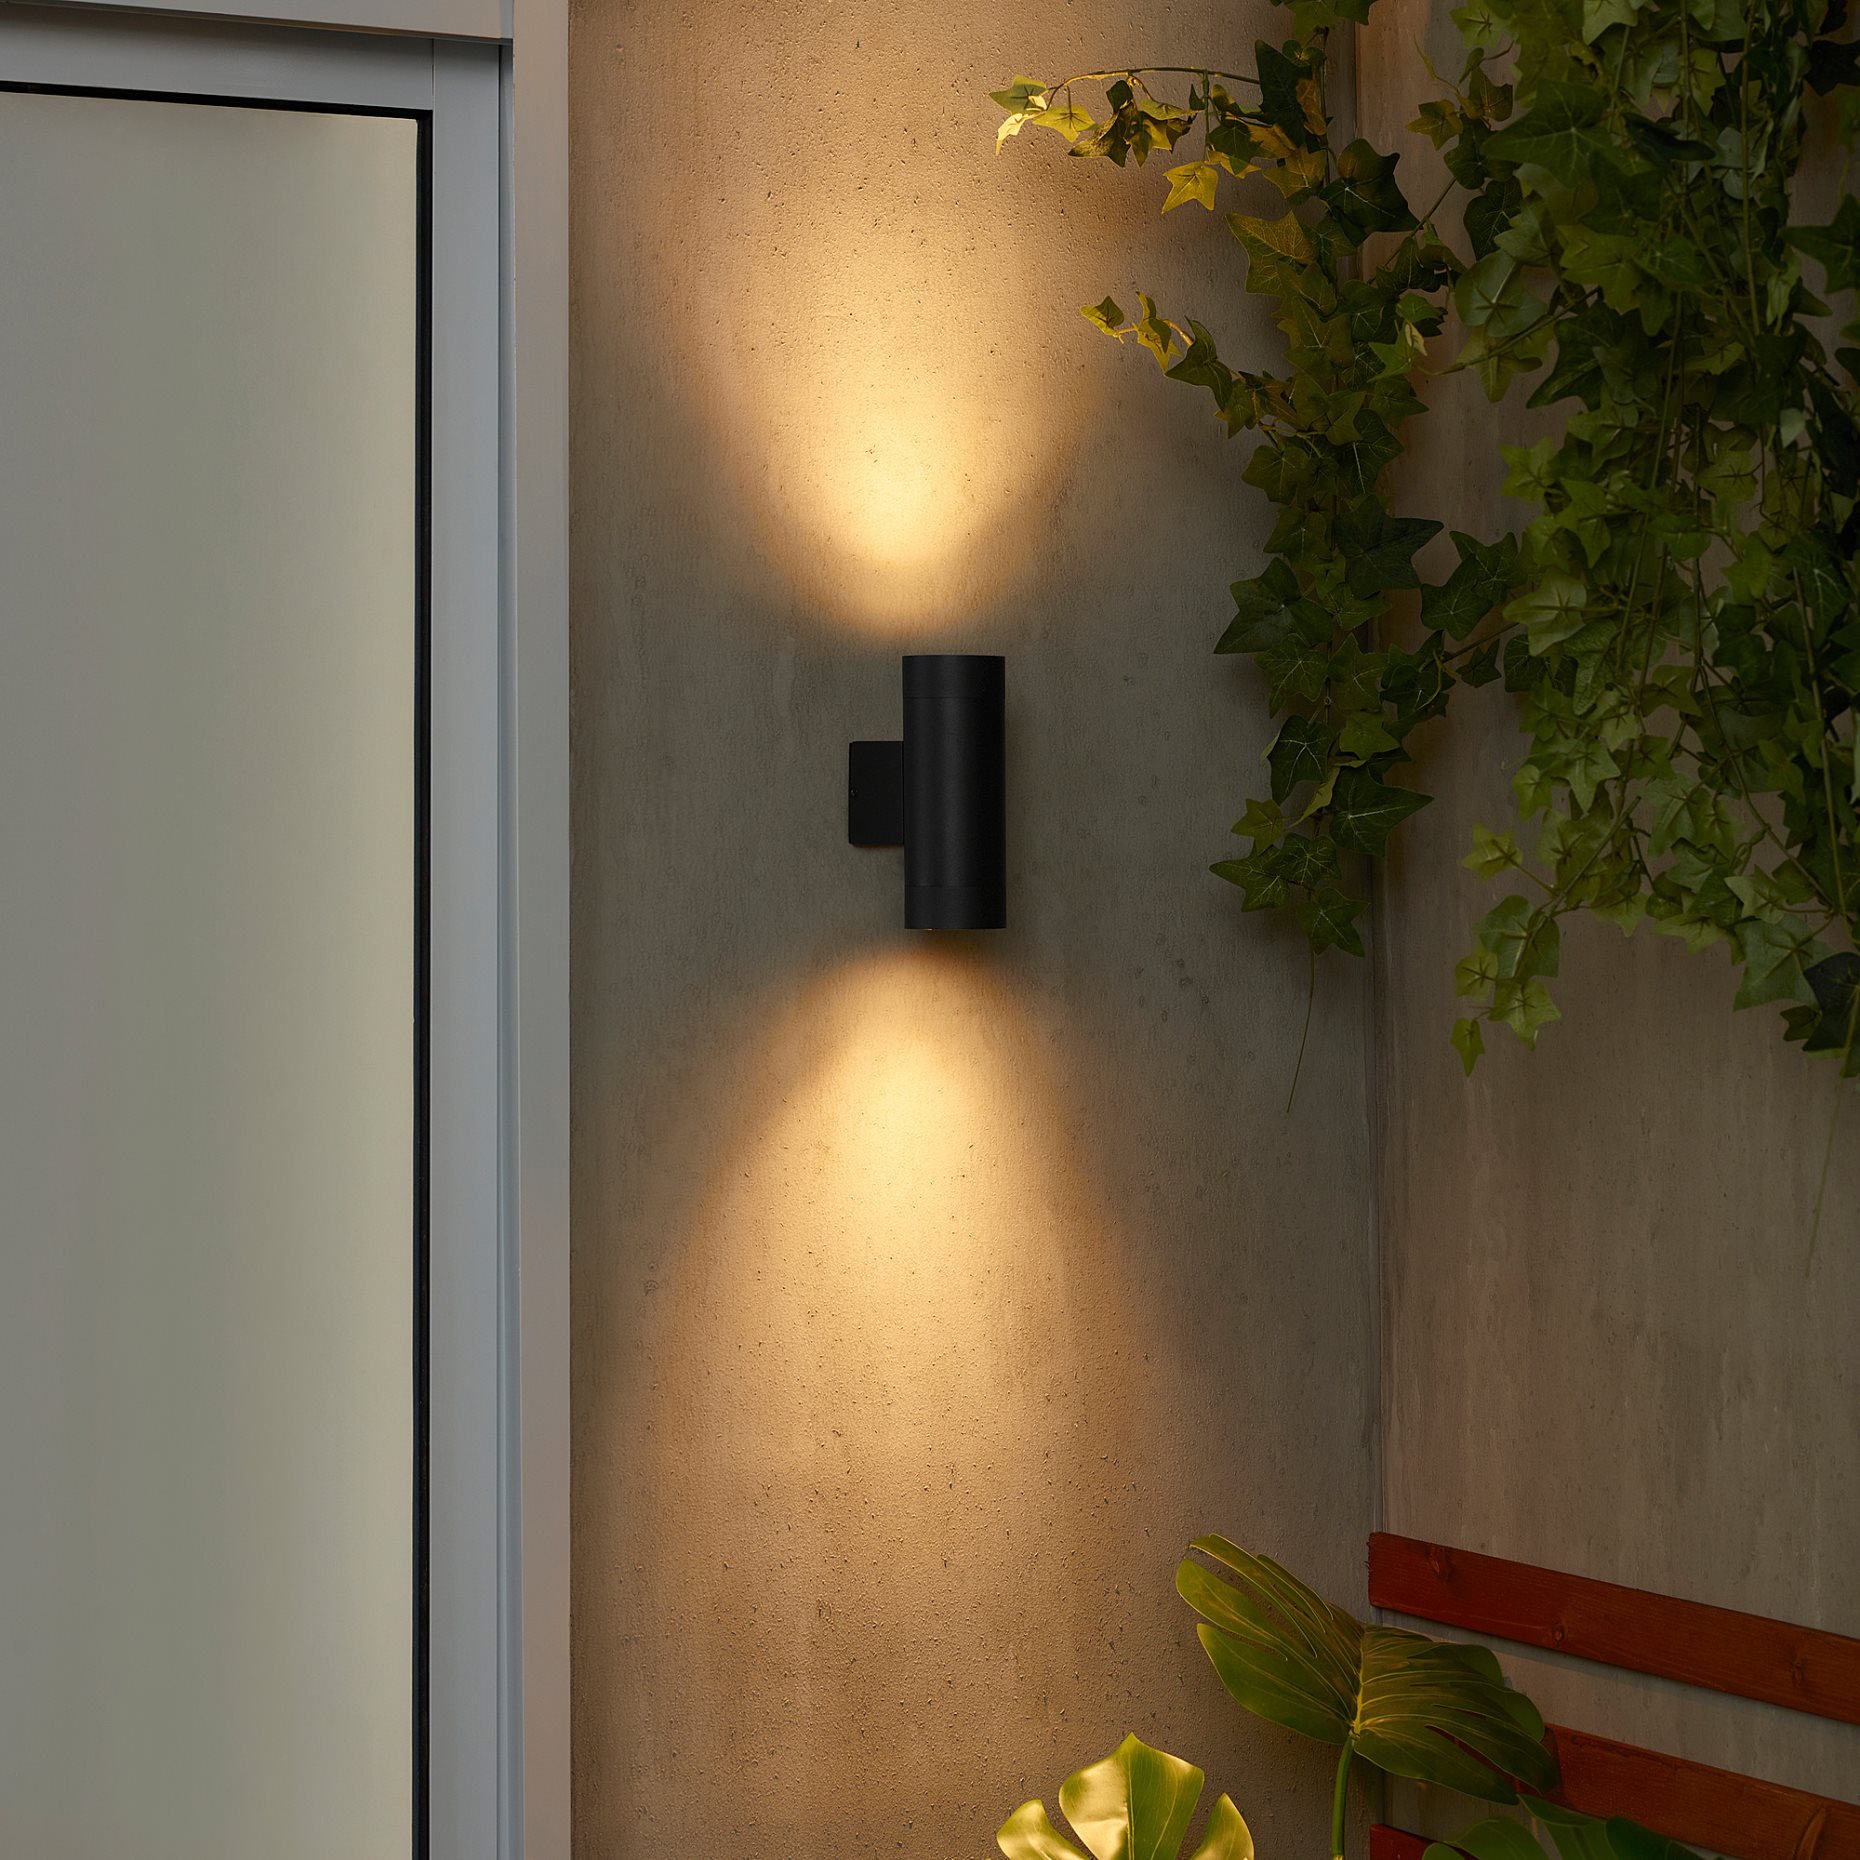 GRÖNSPRÖT, wall up/downlighter/wired-in/outdoor, 16 cm, 905.561.94